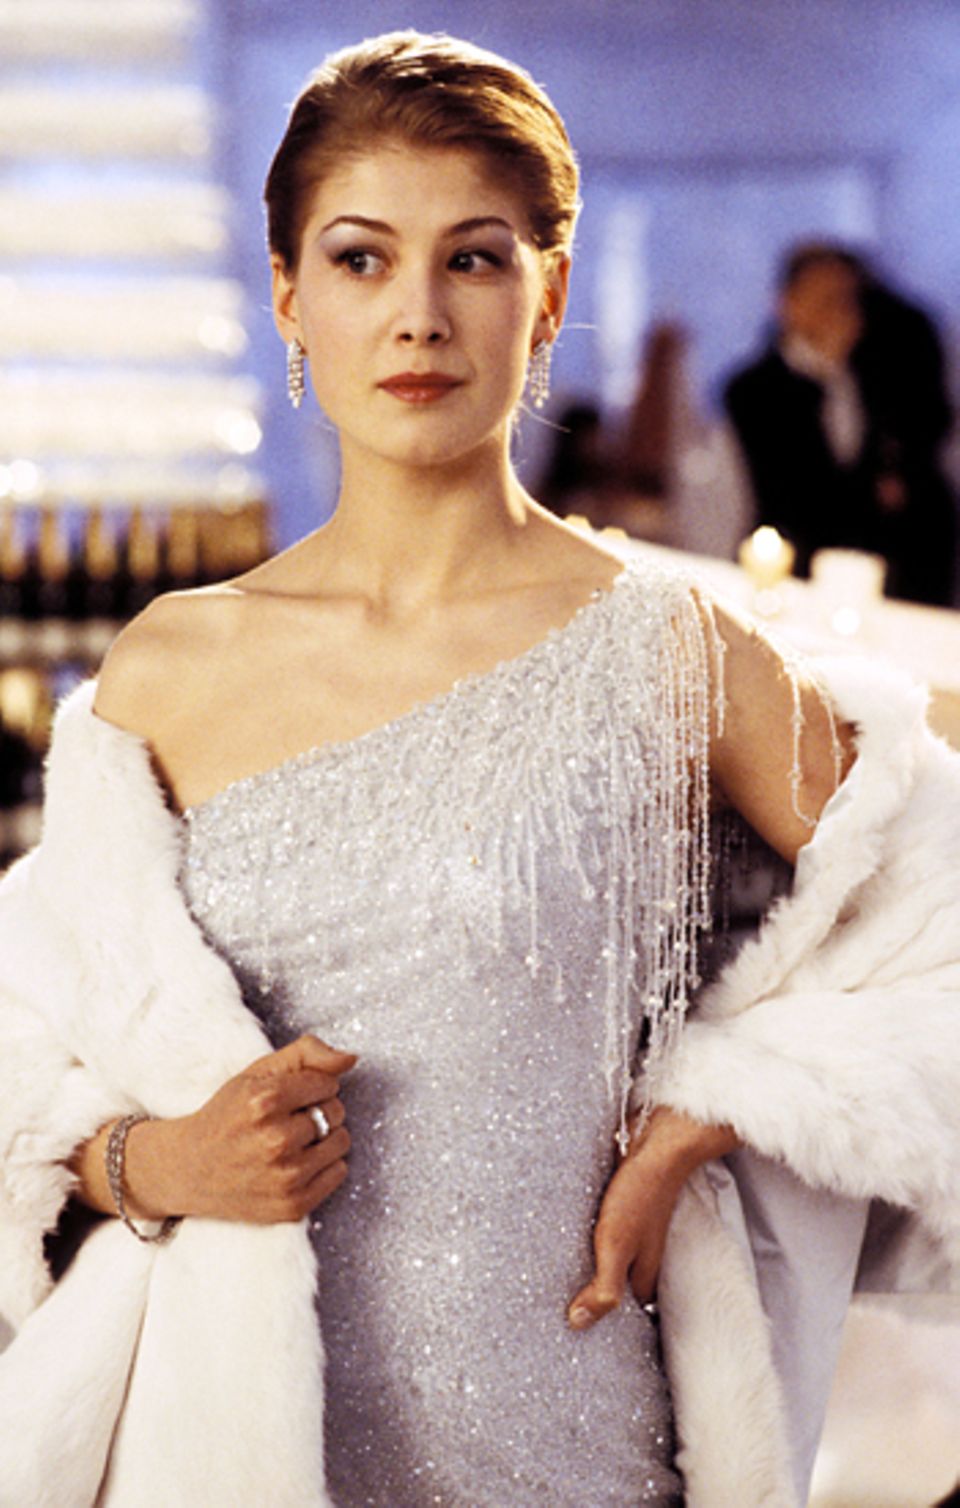 Bond Girls: Rosamund Pike 2002 in "Stirb an einem anderen Tag"